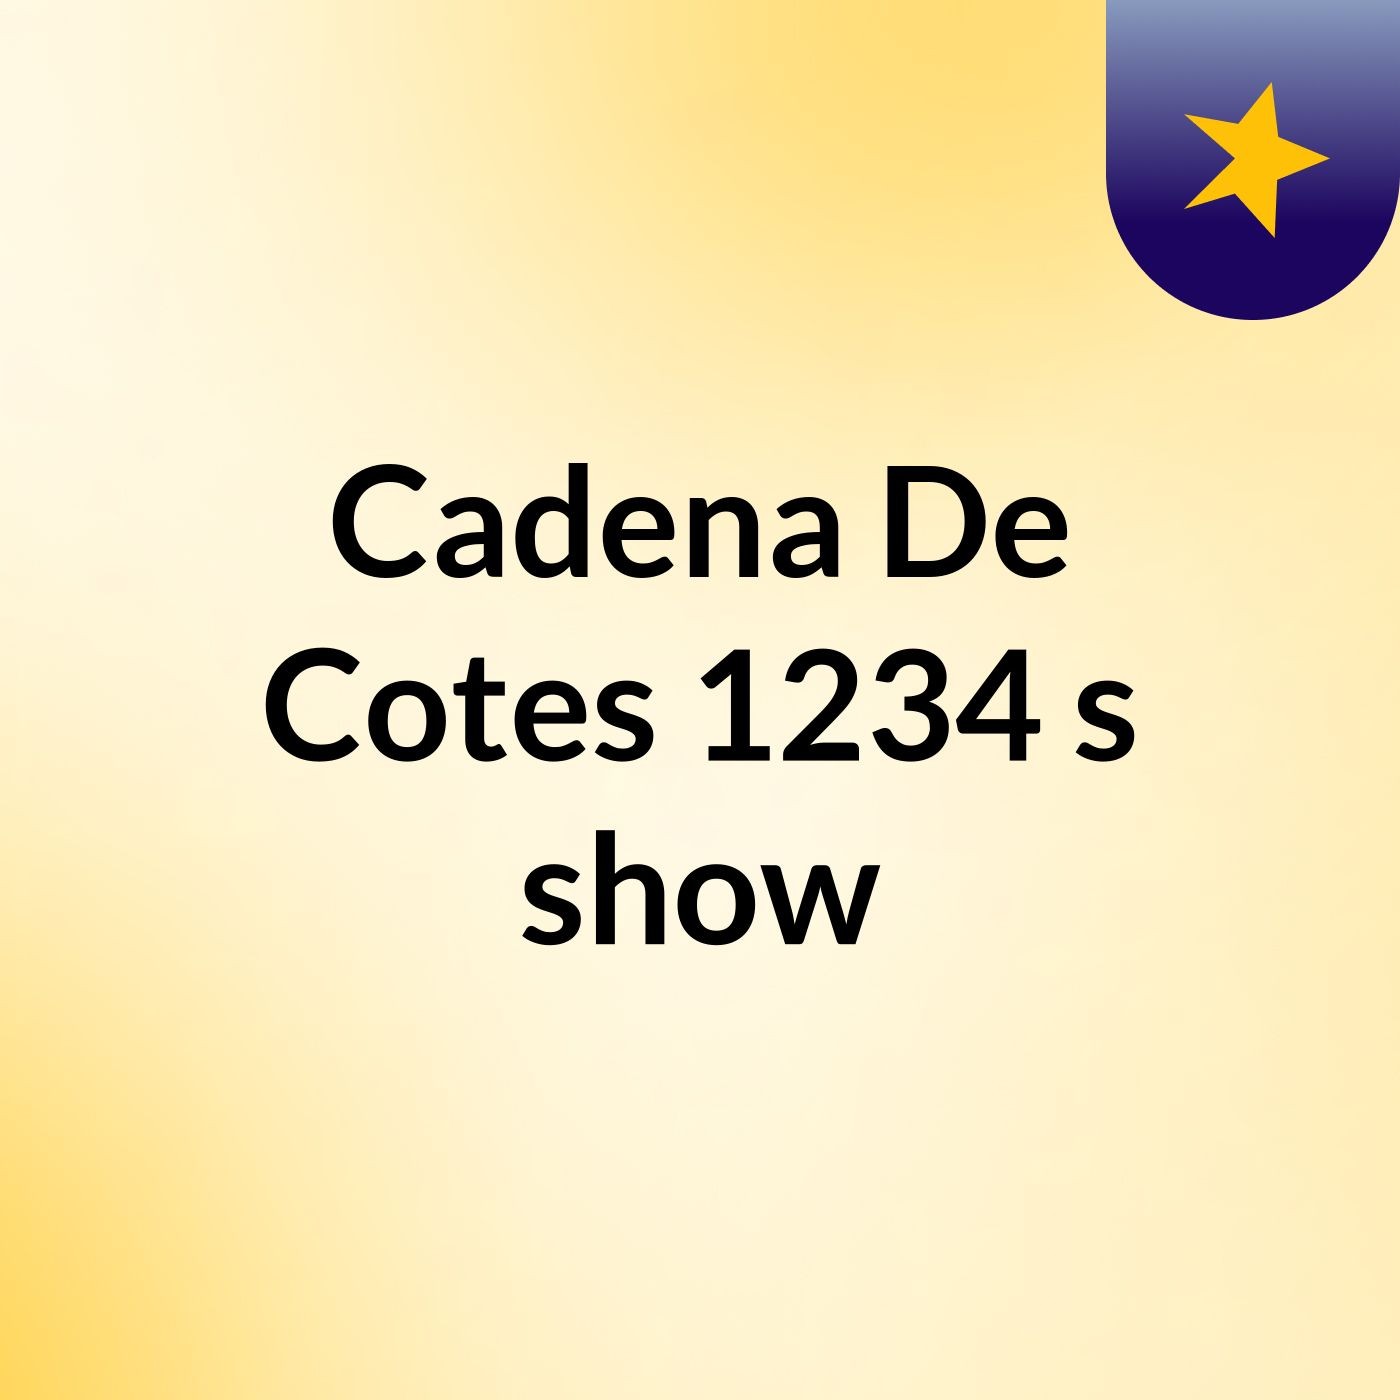 Cadena De Cotes 1234's show